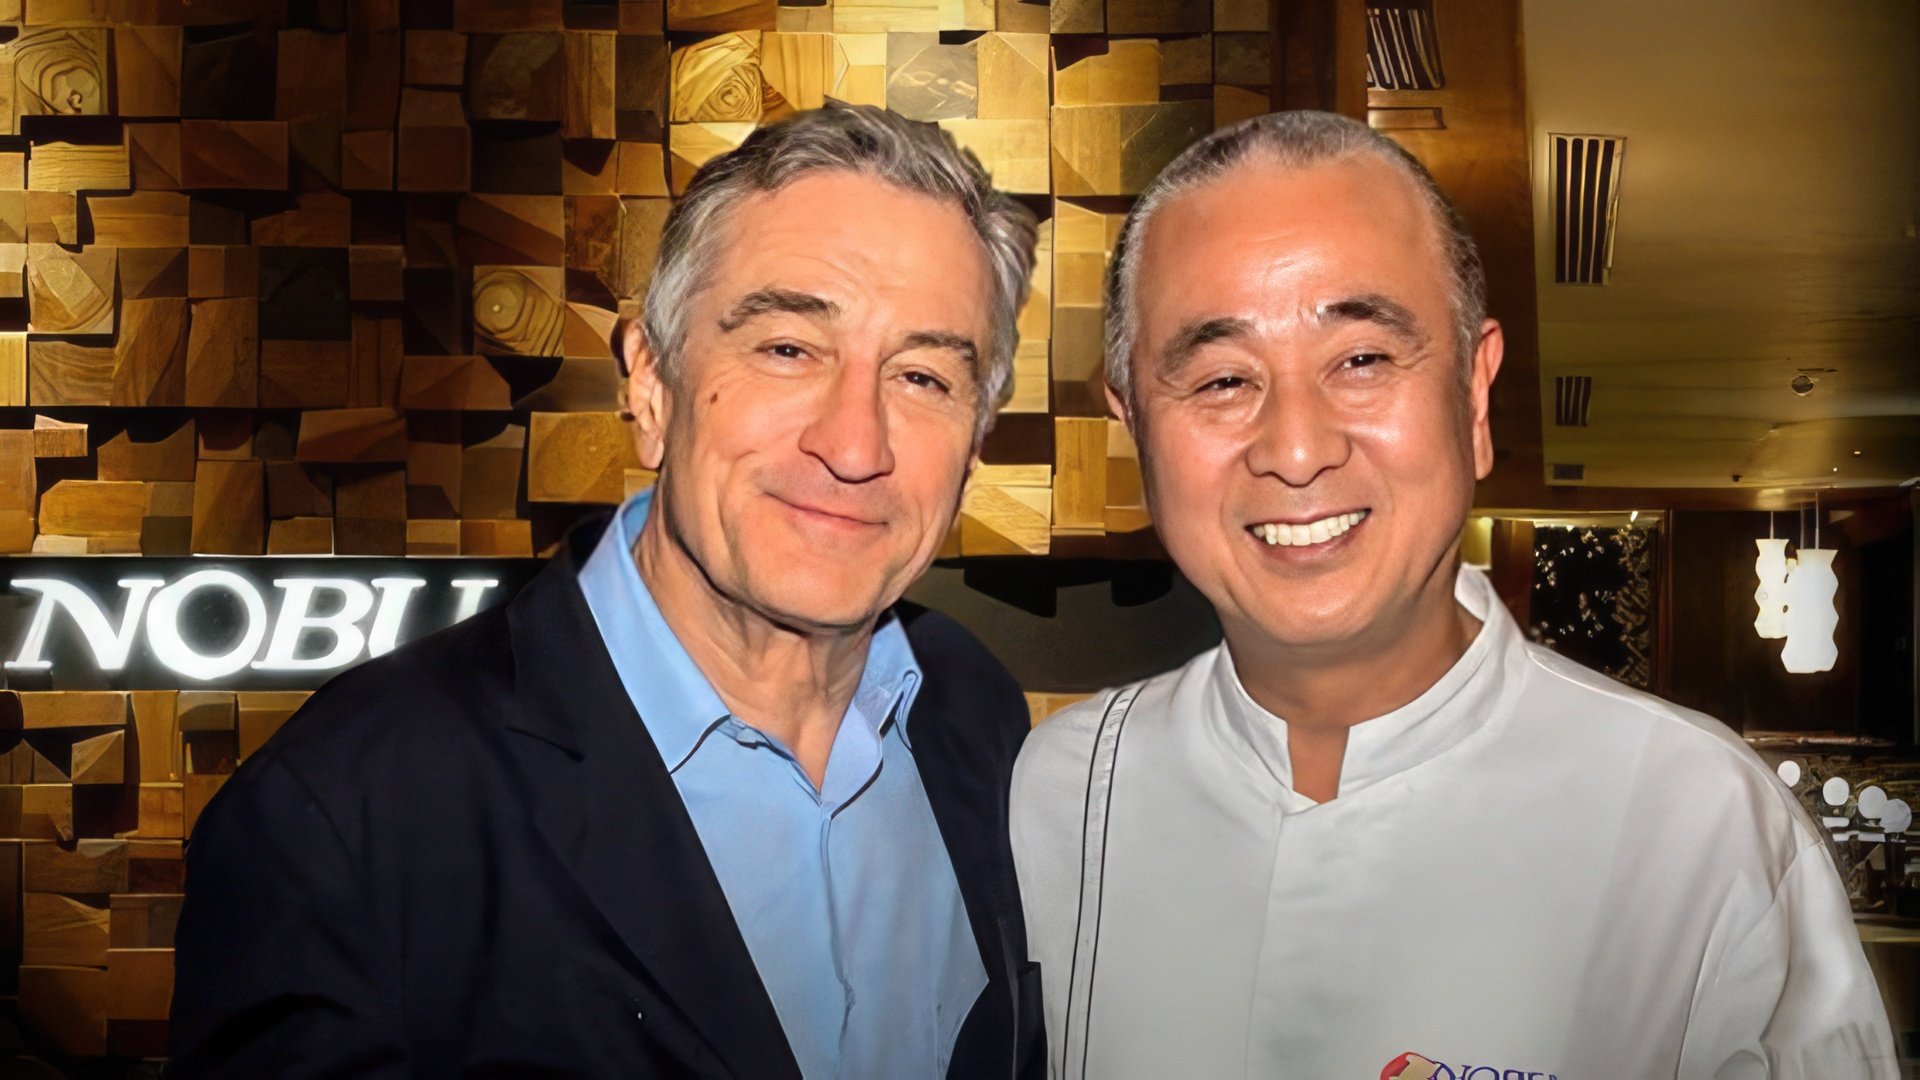 Robert De Niro owns a chain of Japanese restaurants 'NOBU'